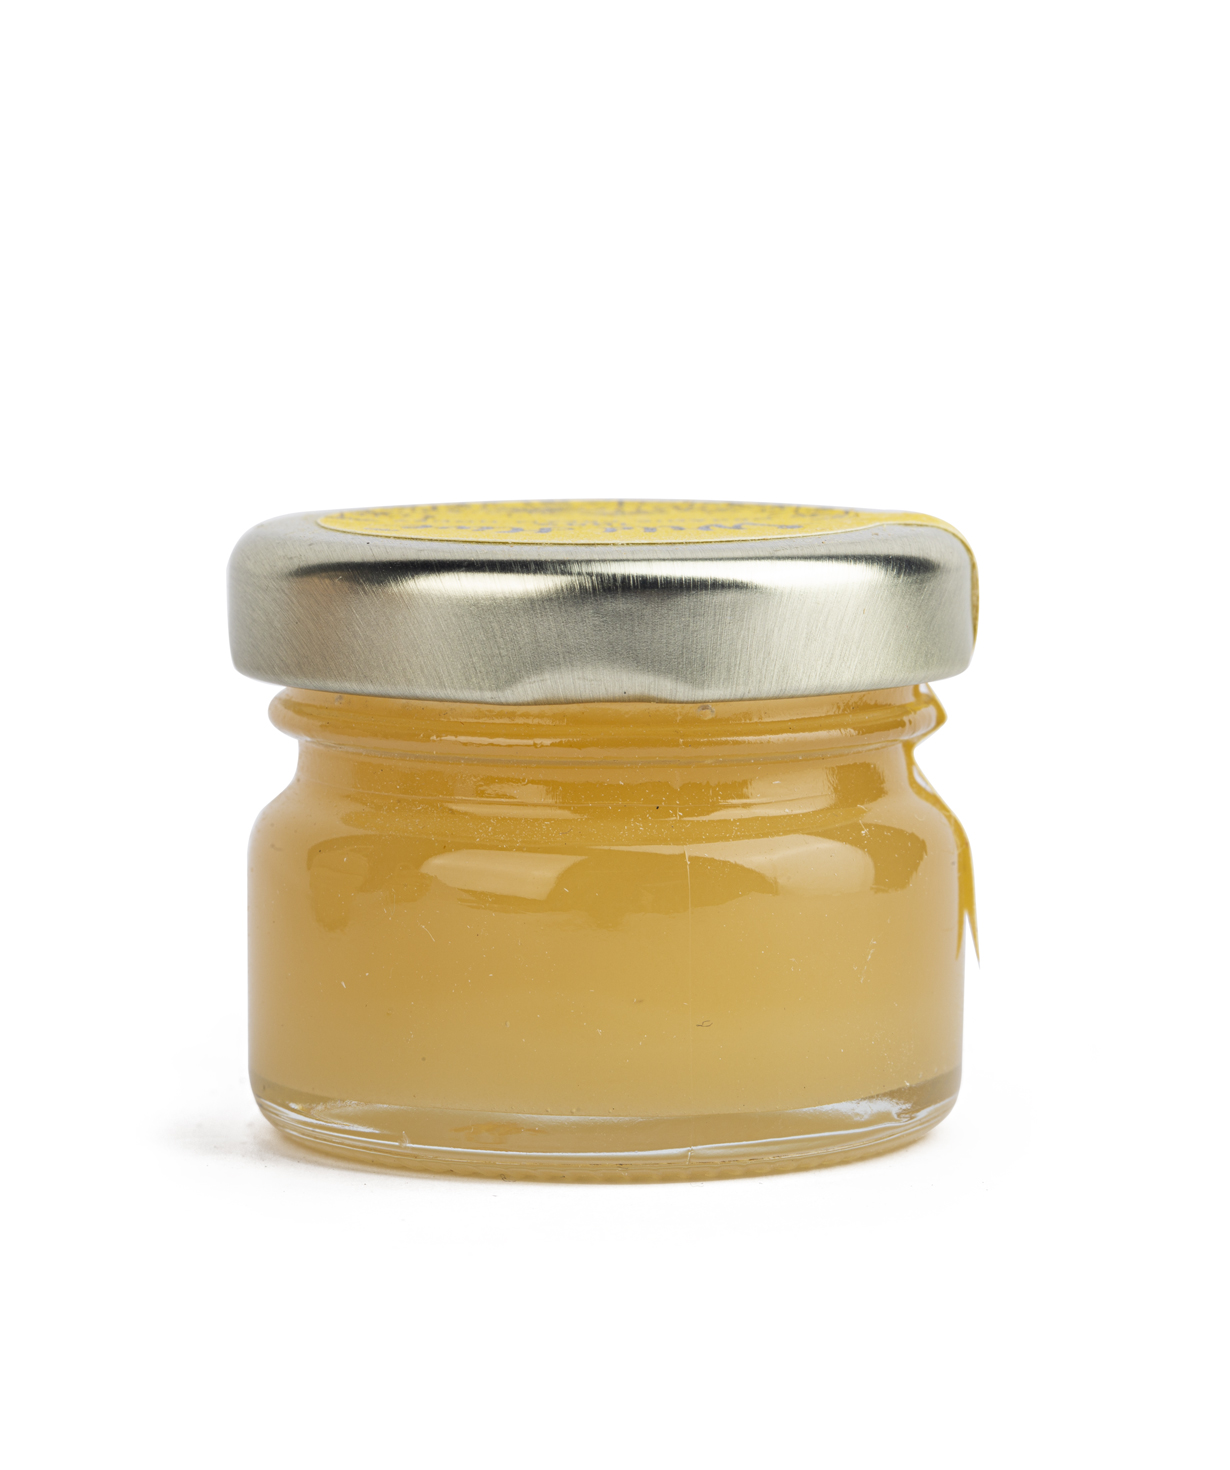 Крем-мед `Wild Hive` 100% органический  30г